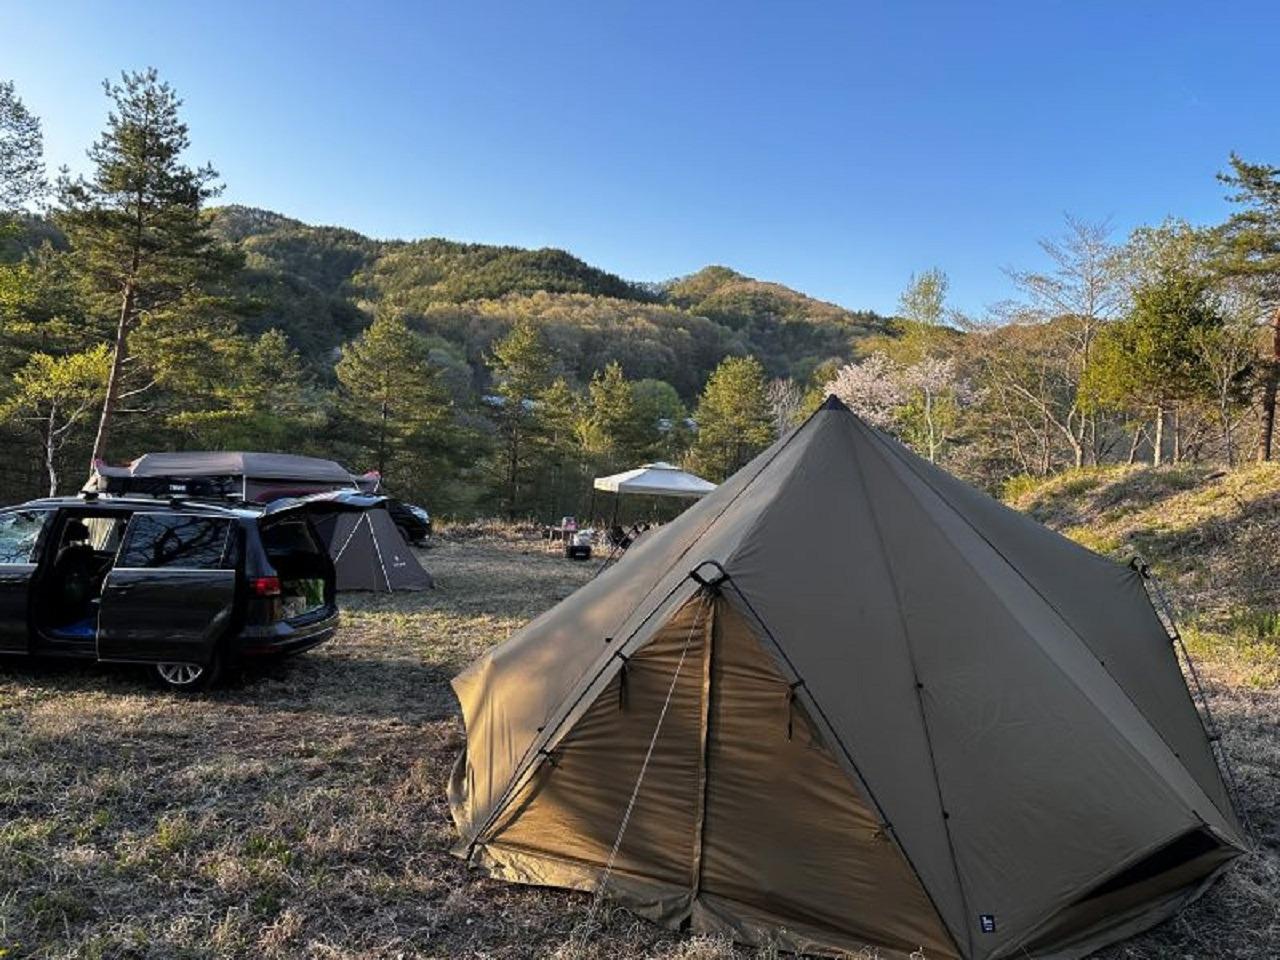 グループキャンプサイトです。テントは4～5張りできます。車は乗り入れも可能。近くに駐車スペース有。ほかのキャンプサイトから一段高いところで少しくらい騒いでも周りの迷惑になりづらい場所にあるので気軽にグループキャンプを楽しめます。料金は何名様であっても20000円になります。